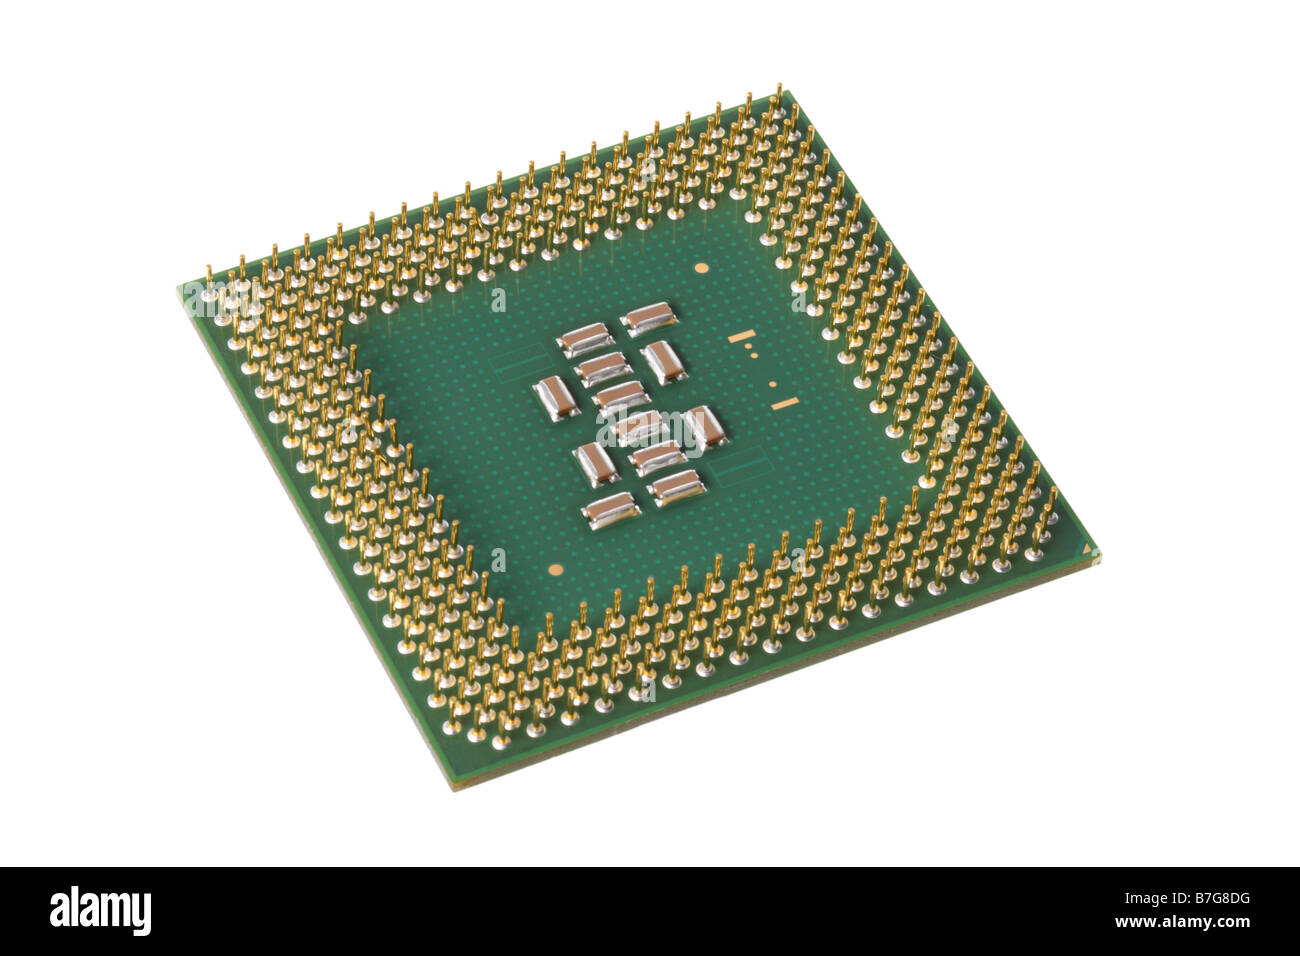 La CPU del processore del computer micorchip ritagliata su sfondo bianco Foto Stock